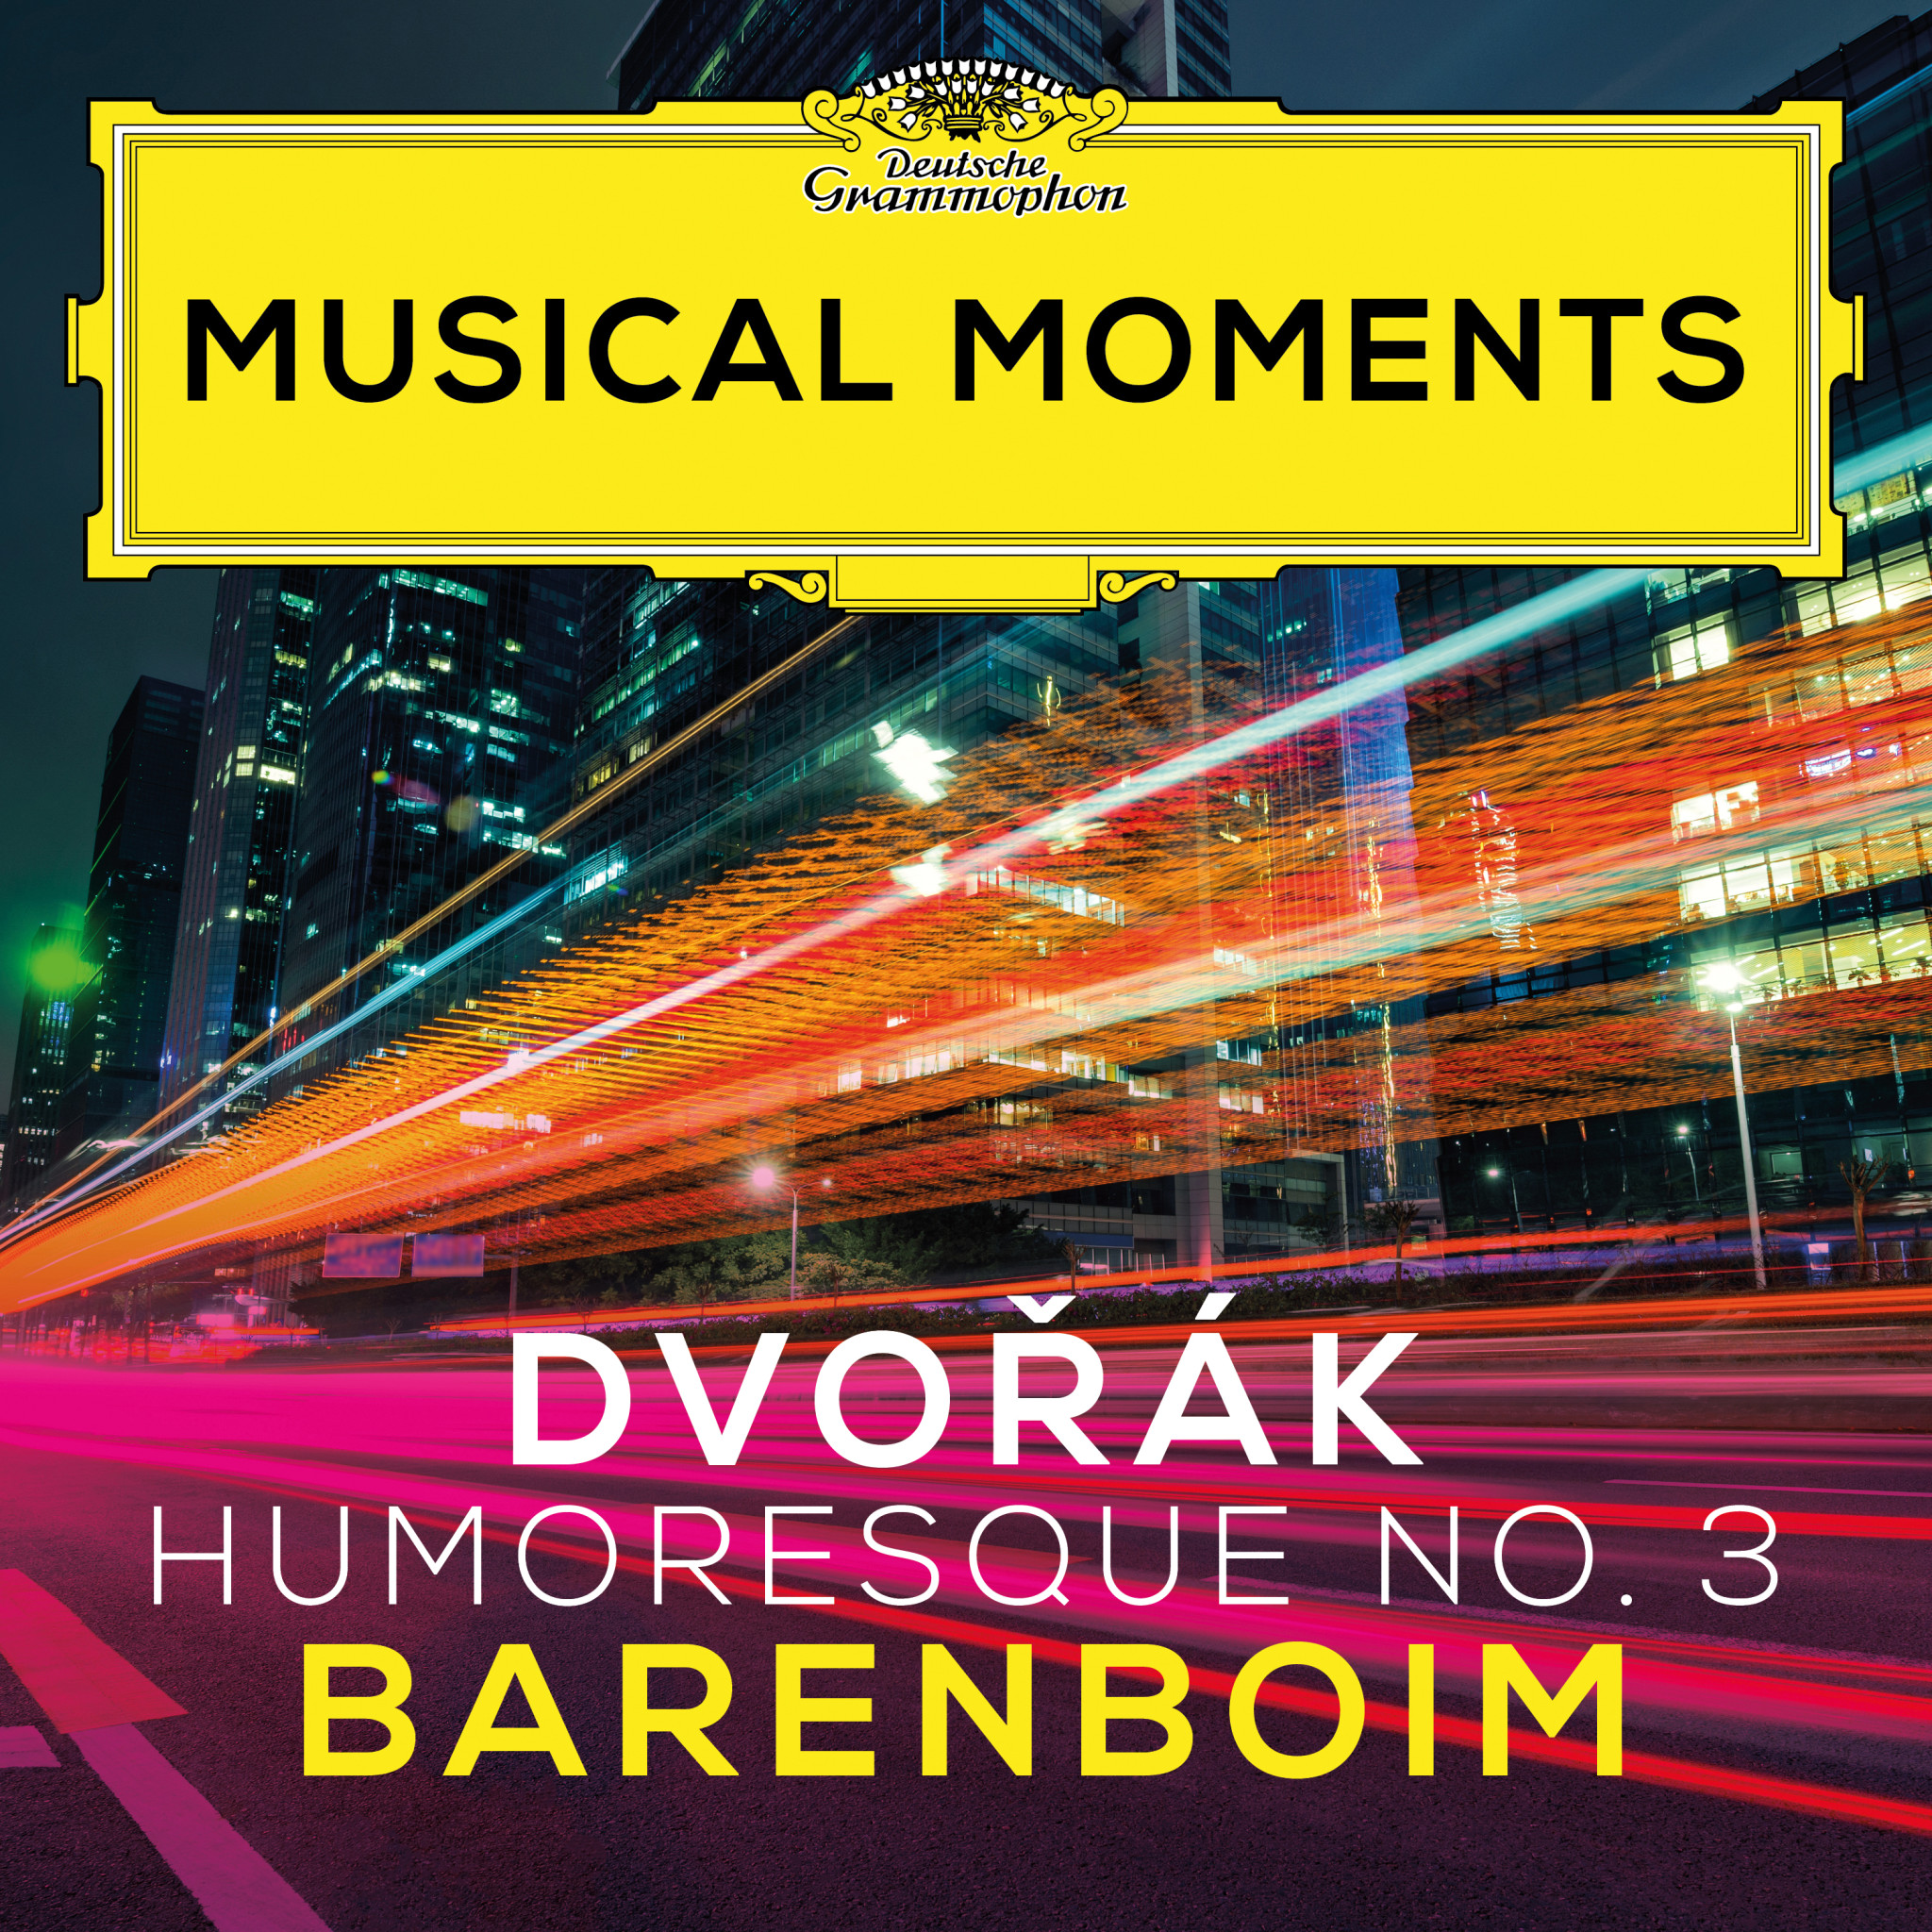 Daniel Barenboim - Dvorak: Humoresque No. 3